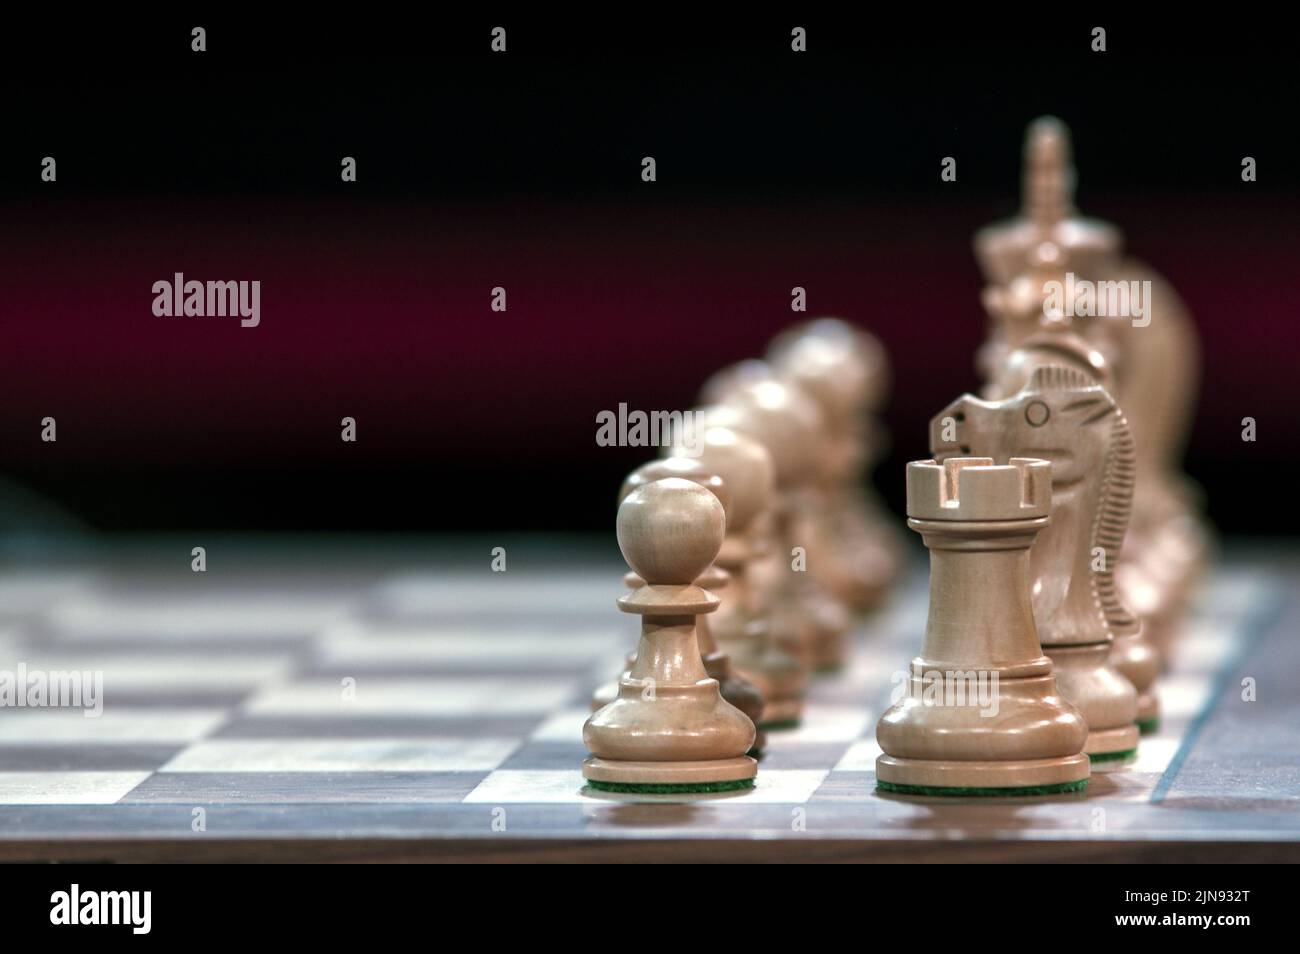 Nahaufnahme von Schachfiguren auf einem Schachbrett mit einem wunderschönen, verschwommenen Hintergrund. Rook, Ritter und Bauer im Vordergrund. Stockfoto